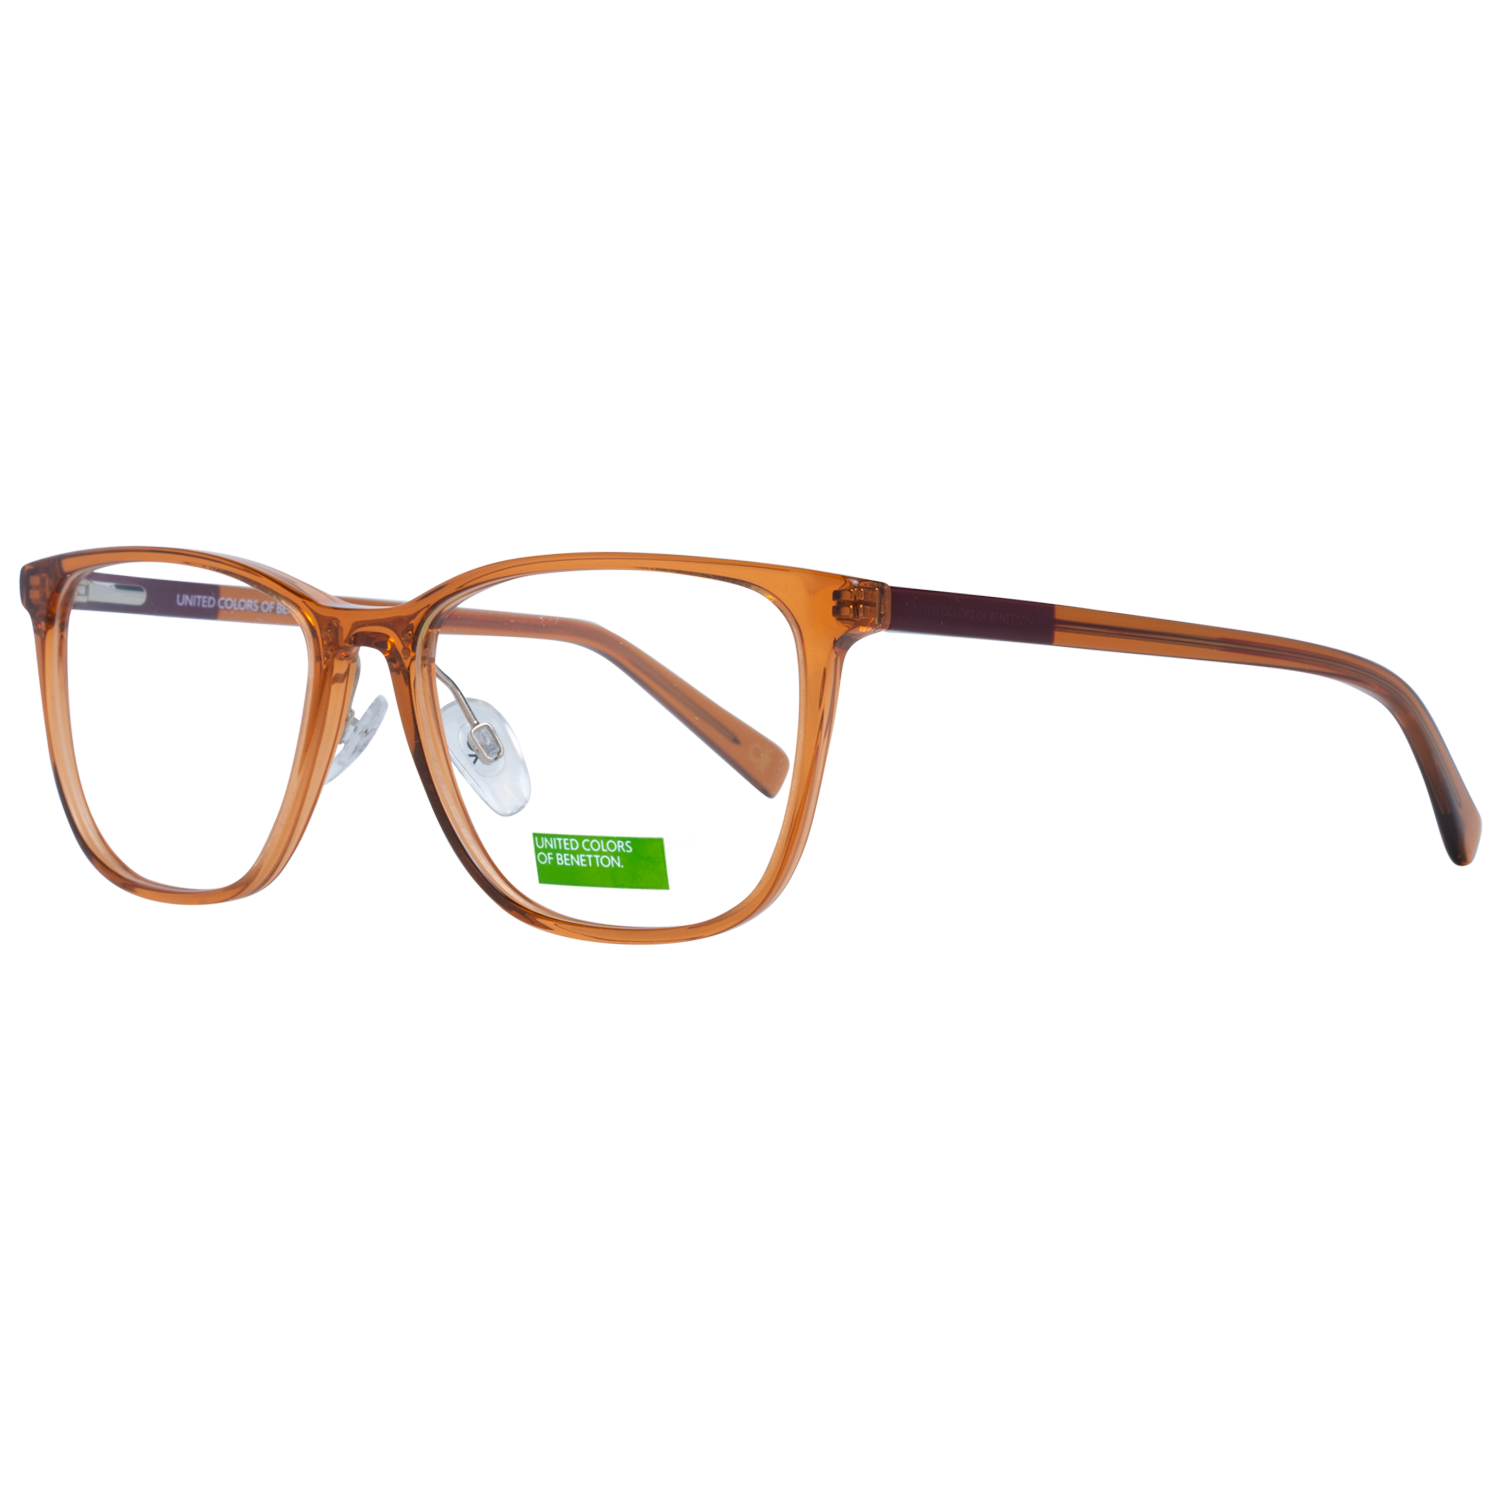 Benetton Frames Benetton Glasses Frames BEO1029 119 55 Eyeglasses Eyewear UK USA Australia 